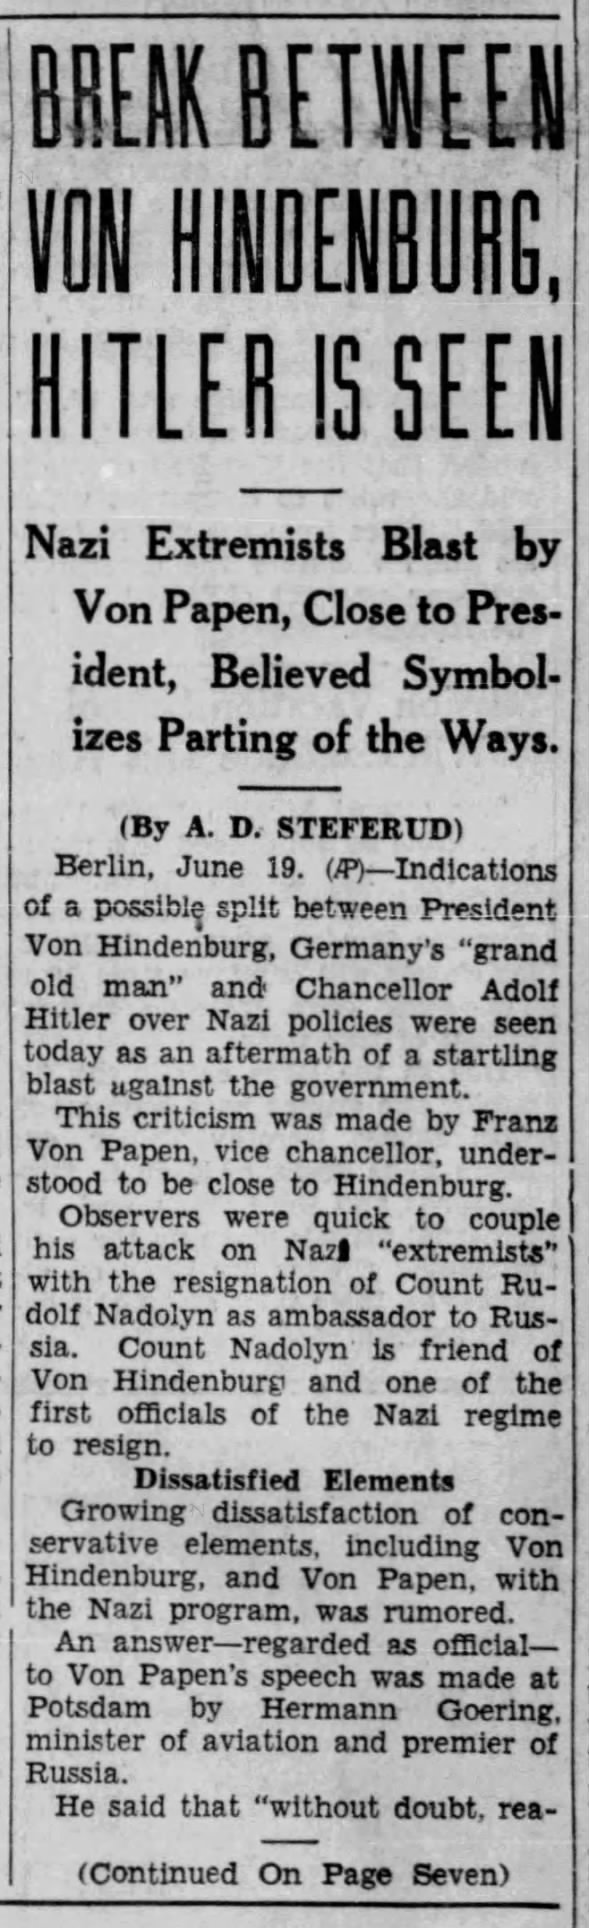 Break Between Von Hindenberg, Hitler Is Seen